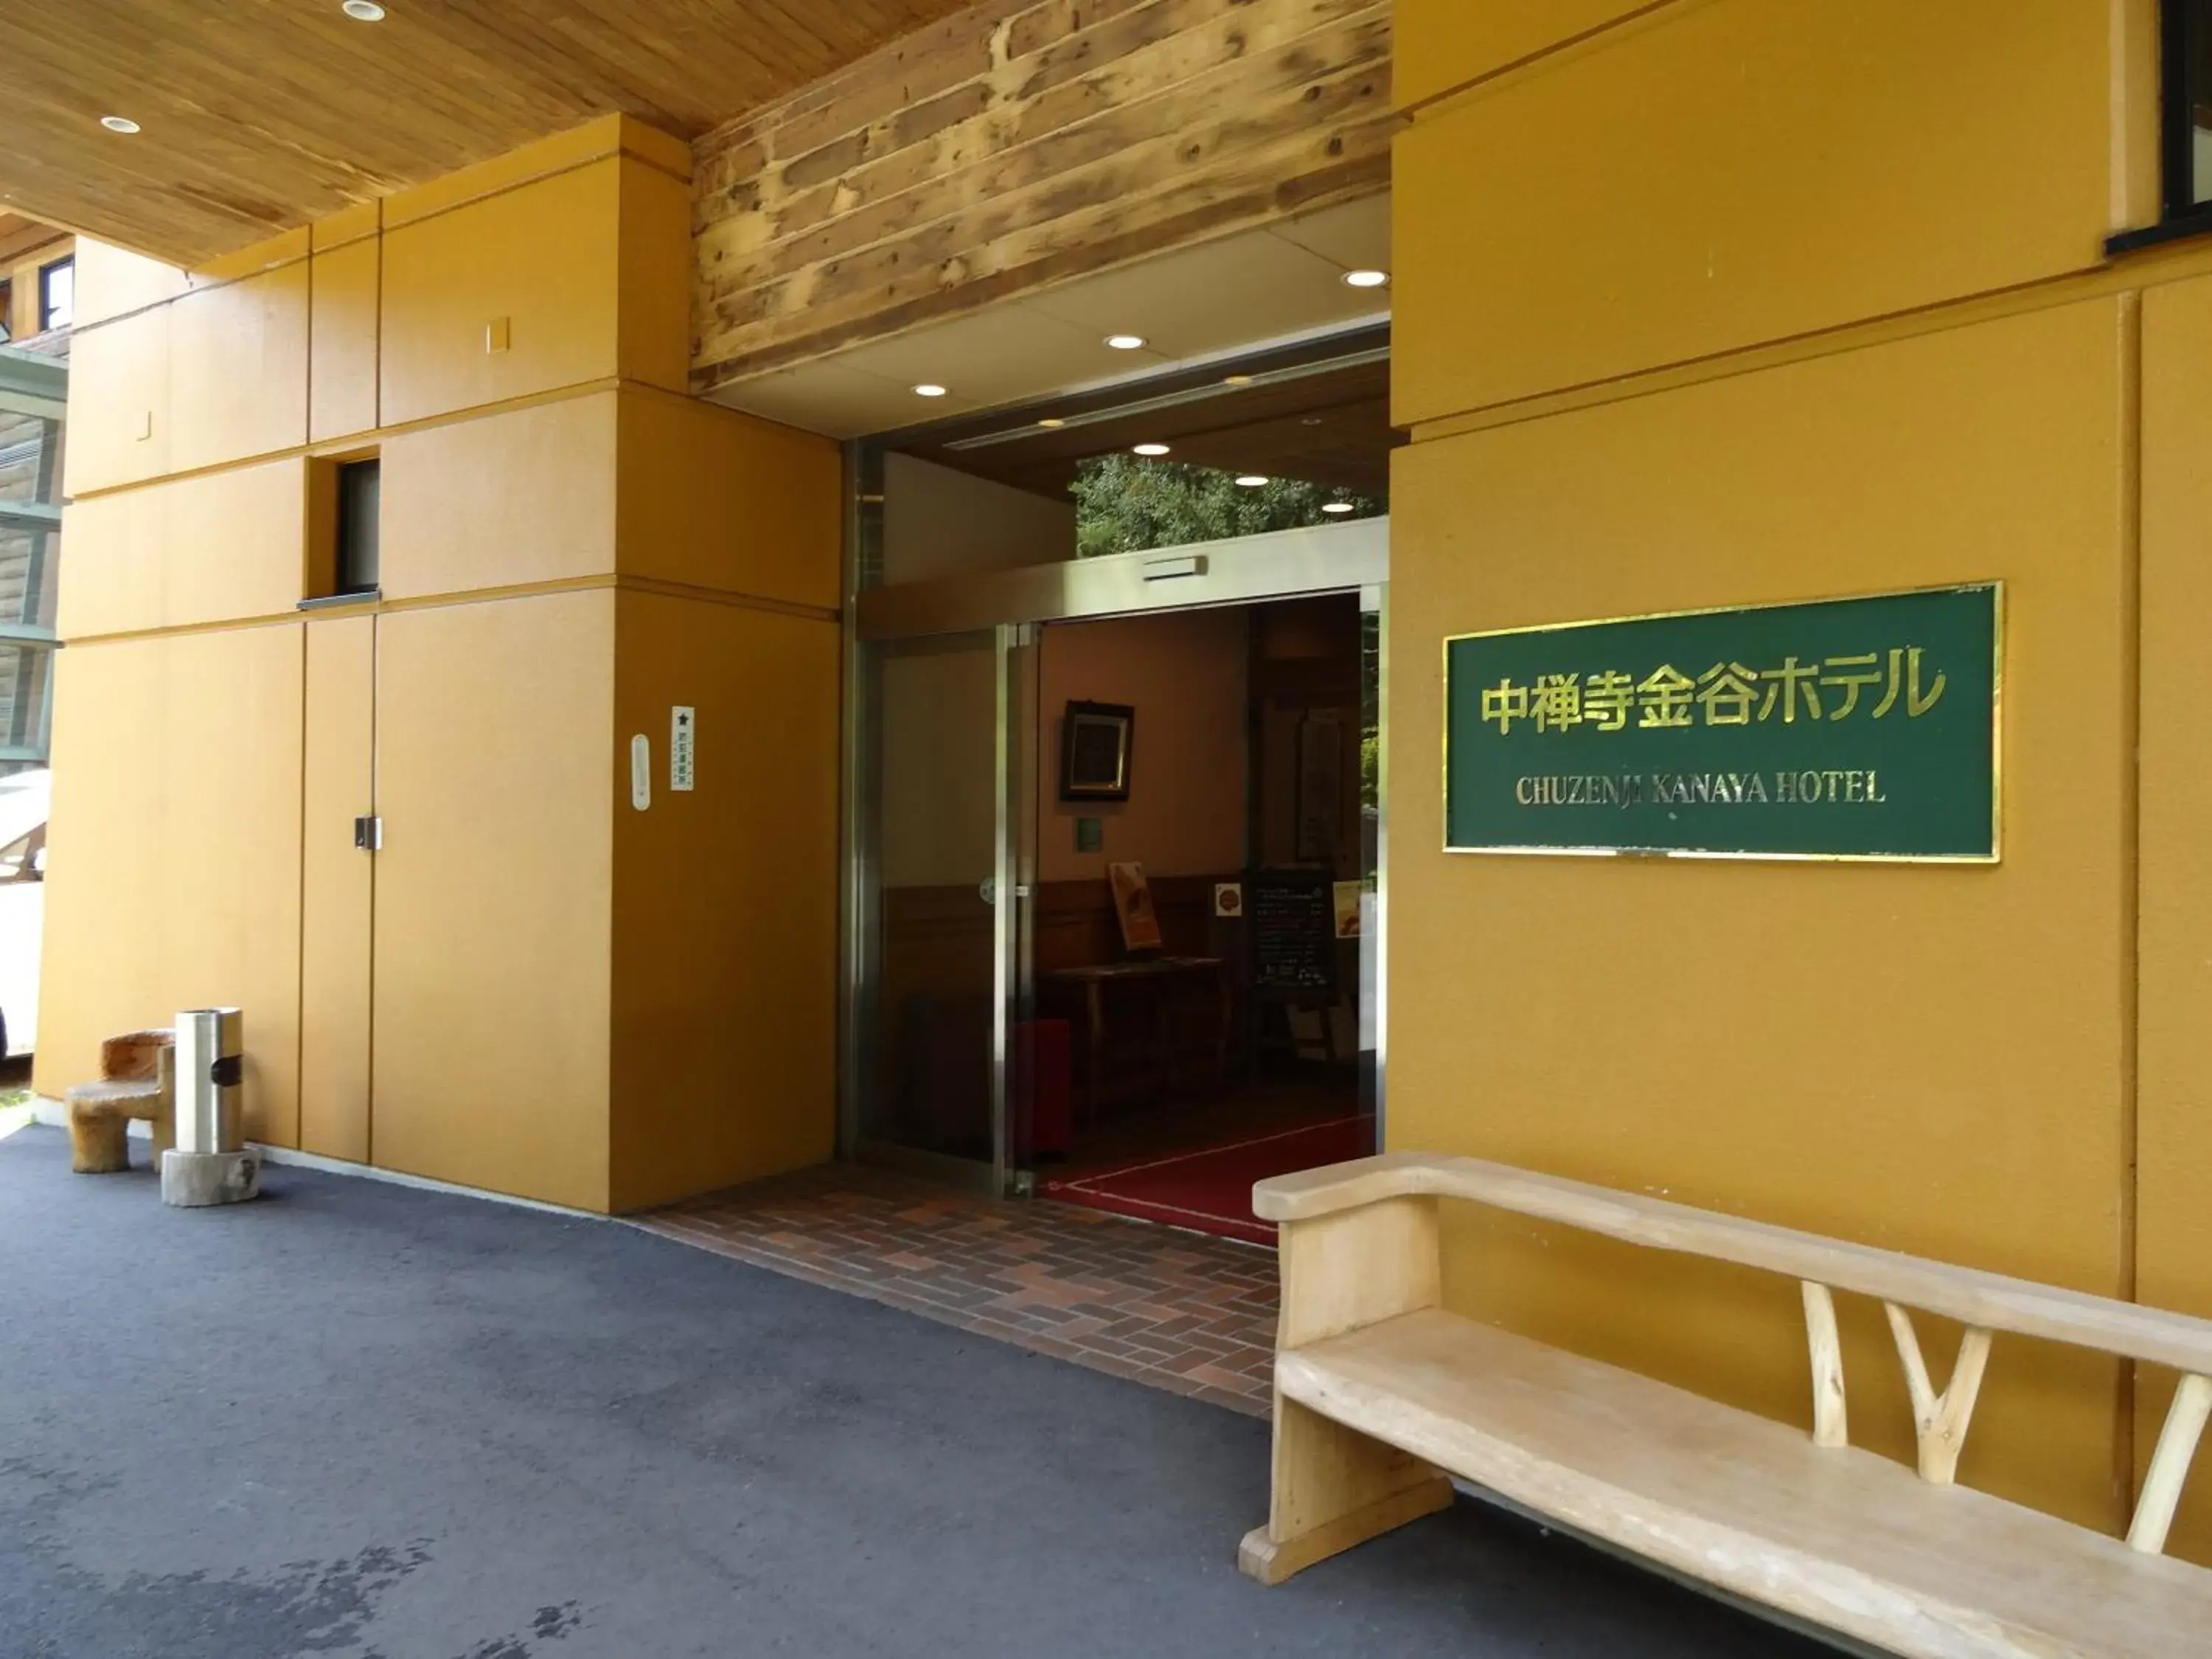 Facade/entrance in Chuzenji Kanaya Hotel